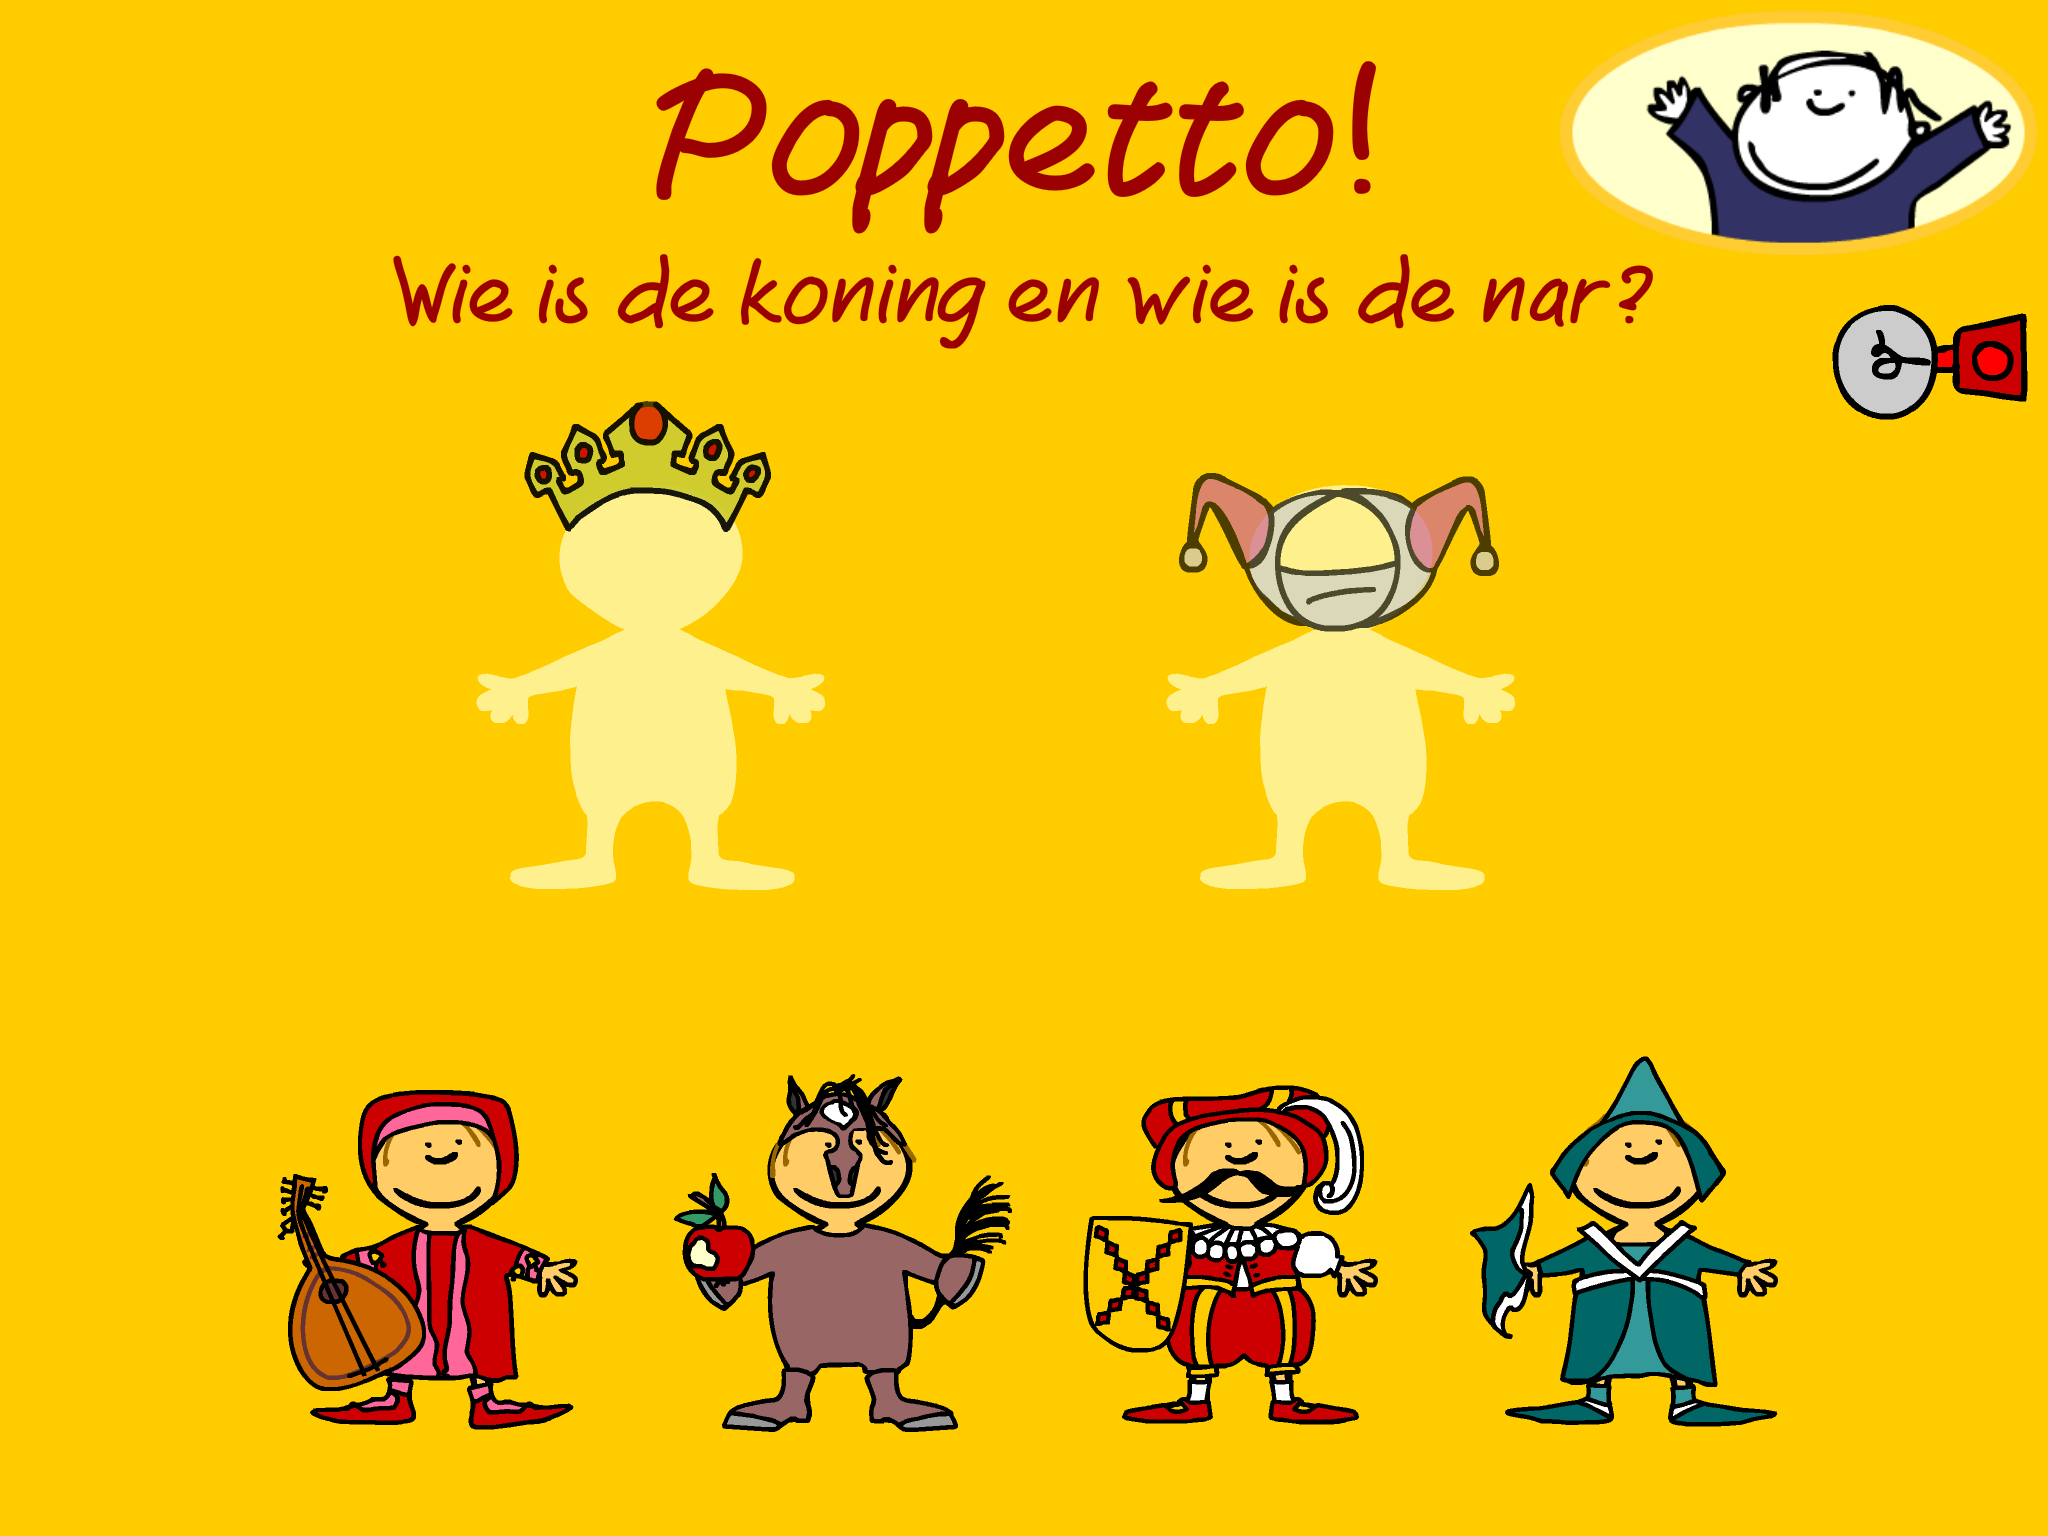 Poppetto